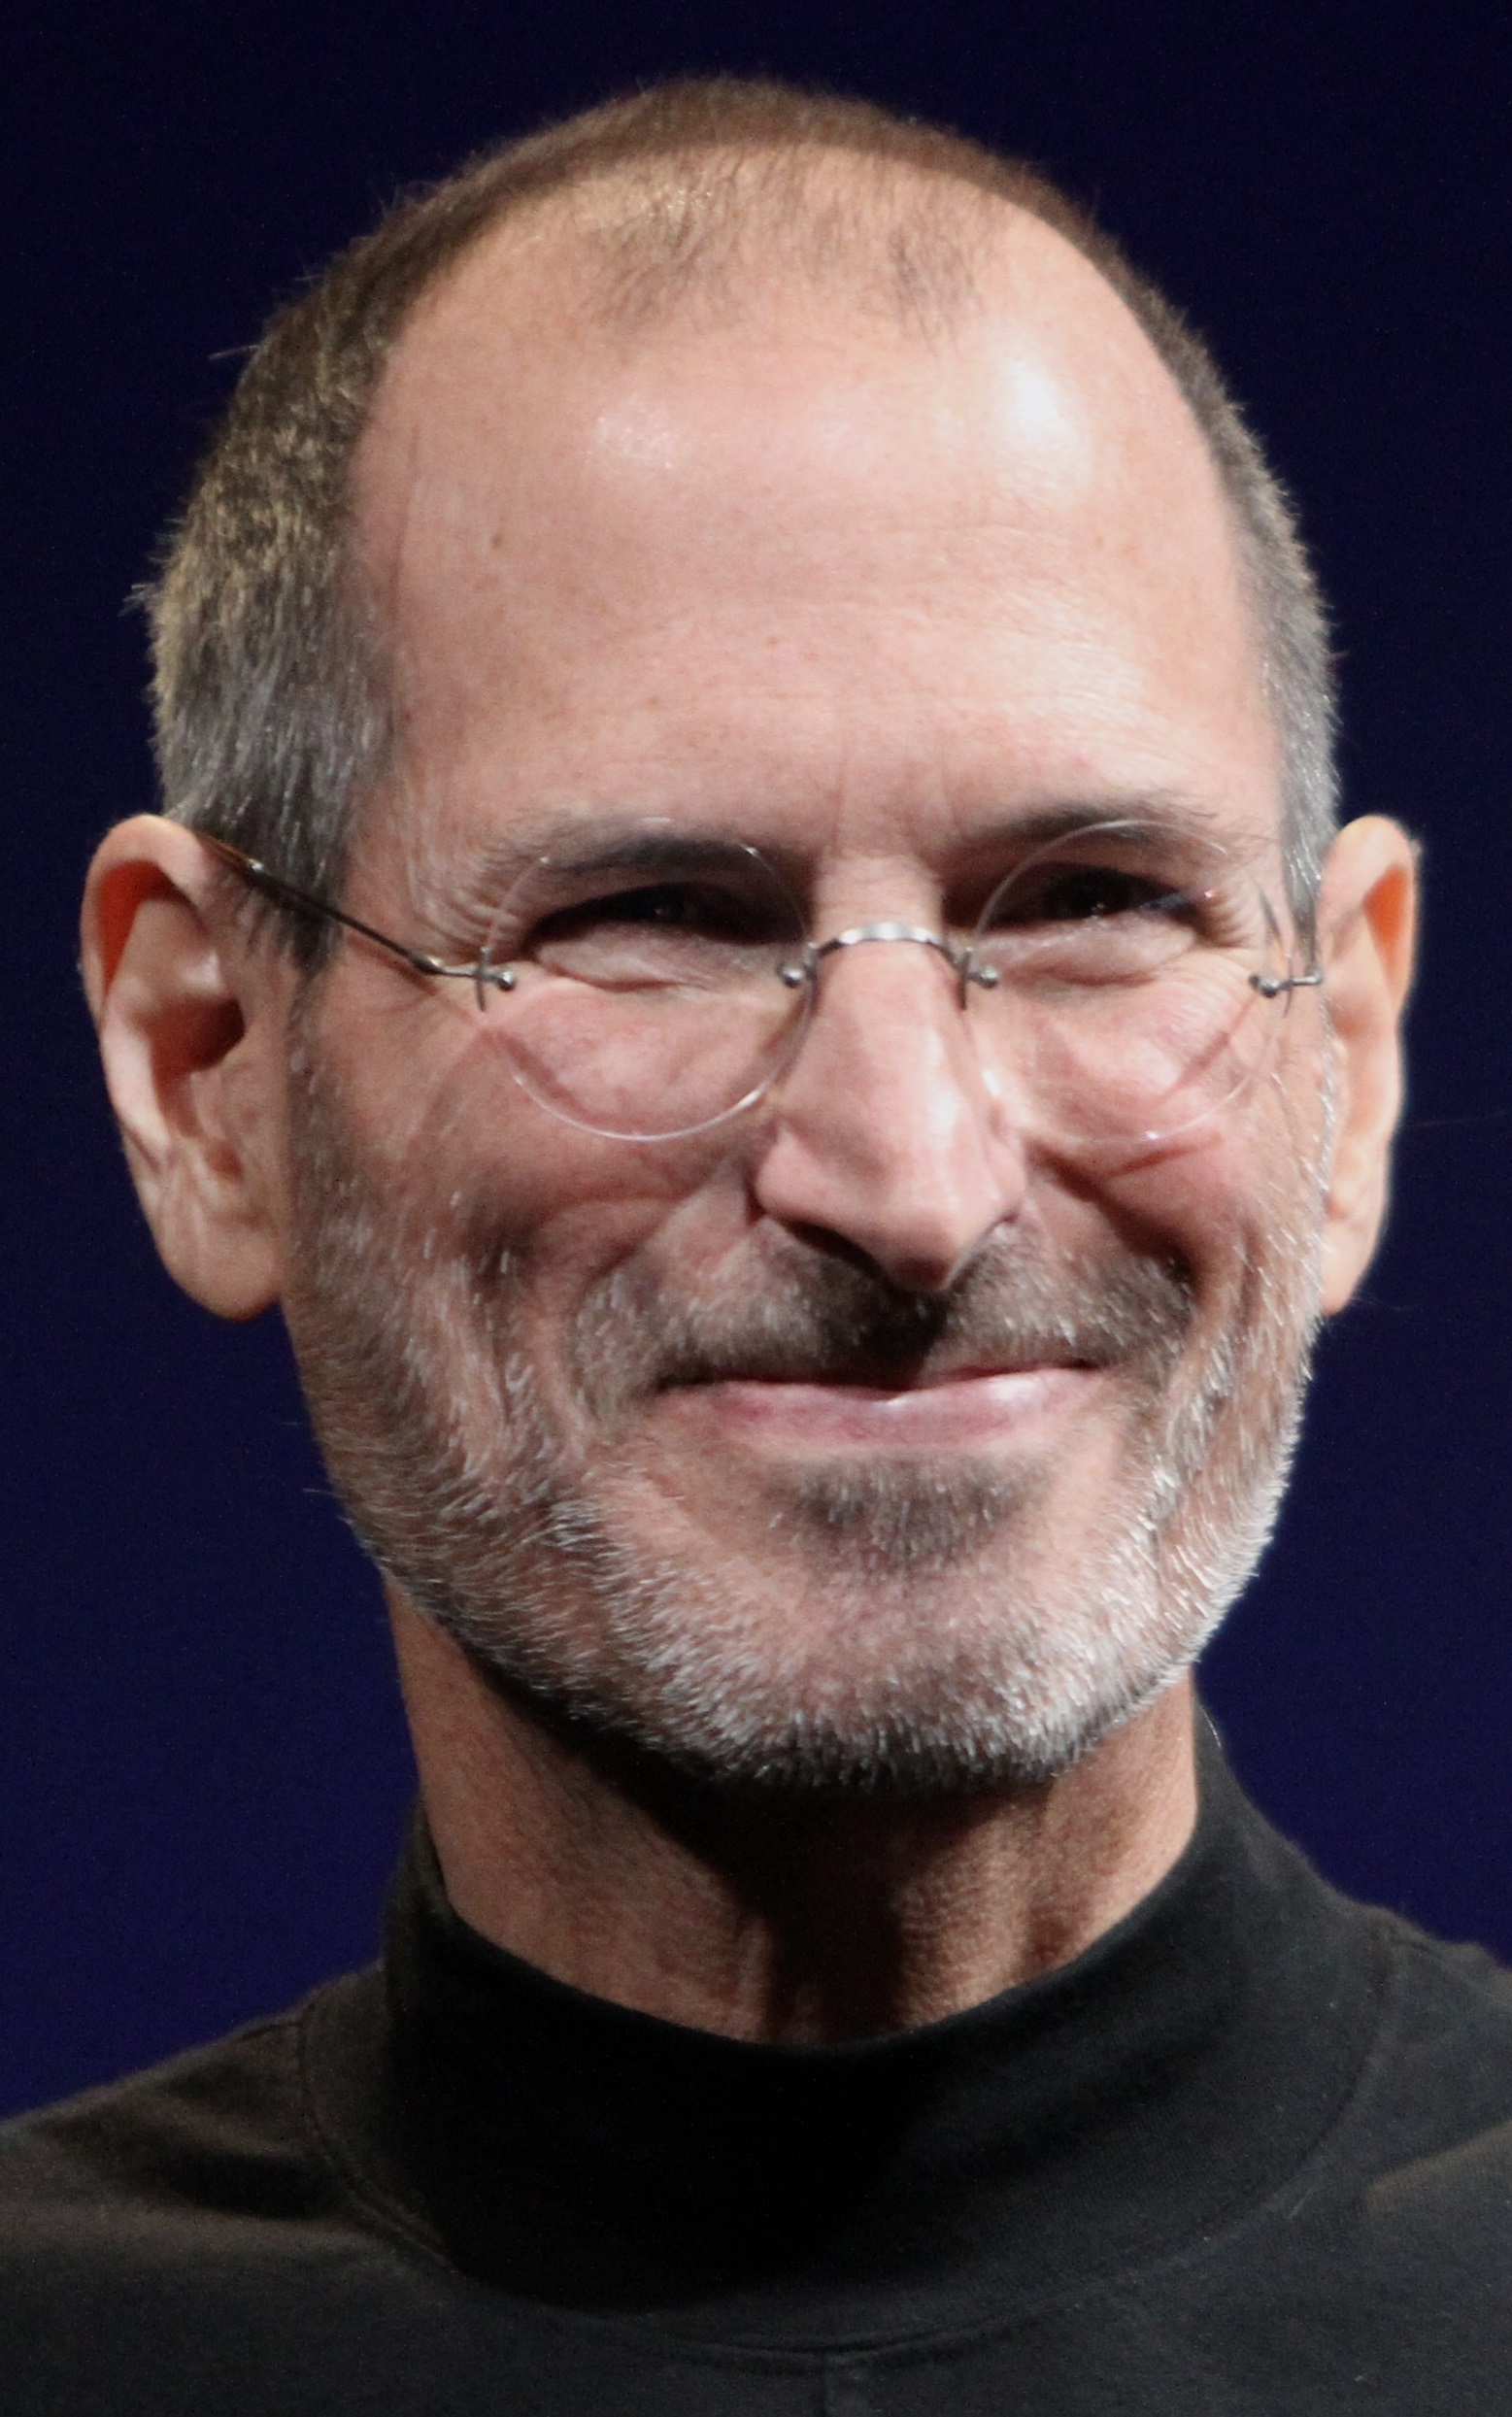 auteur Steve Jobs de la citation Un iPod, un téléphone, un communicateur mobile Internet... ce ne sont PAS trois appareils distincts ! Et nous l'appelons iPhone ! Aujourd'hui, Apple va réinventer le téléphone. Et le voici.